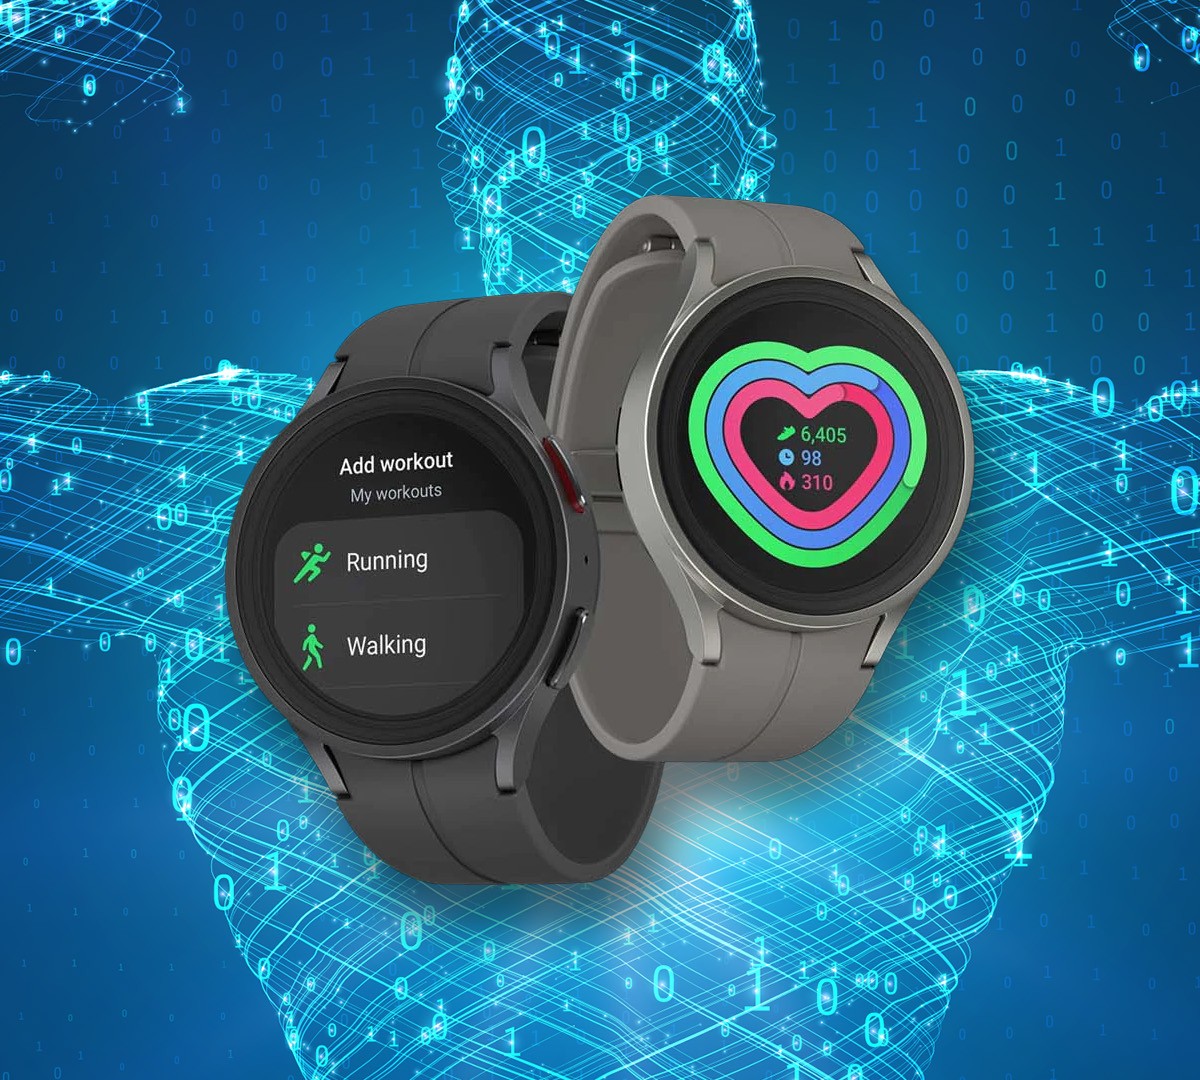 Google indica apps para cuidar da saúde usando um smartwatch